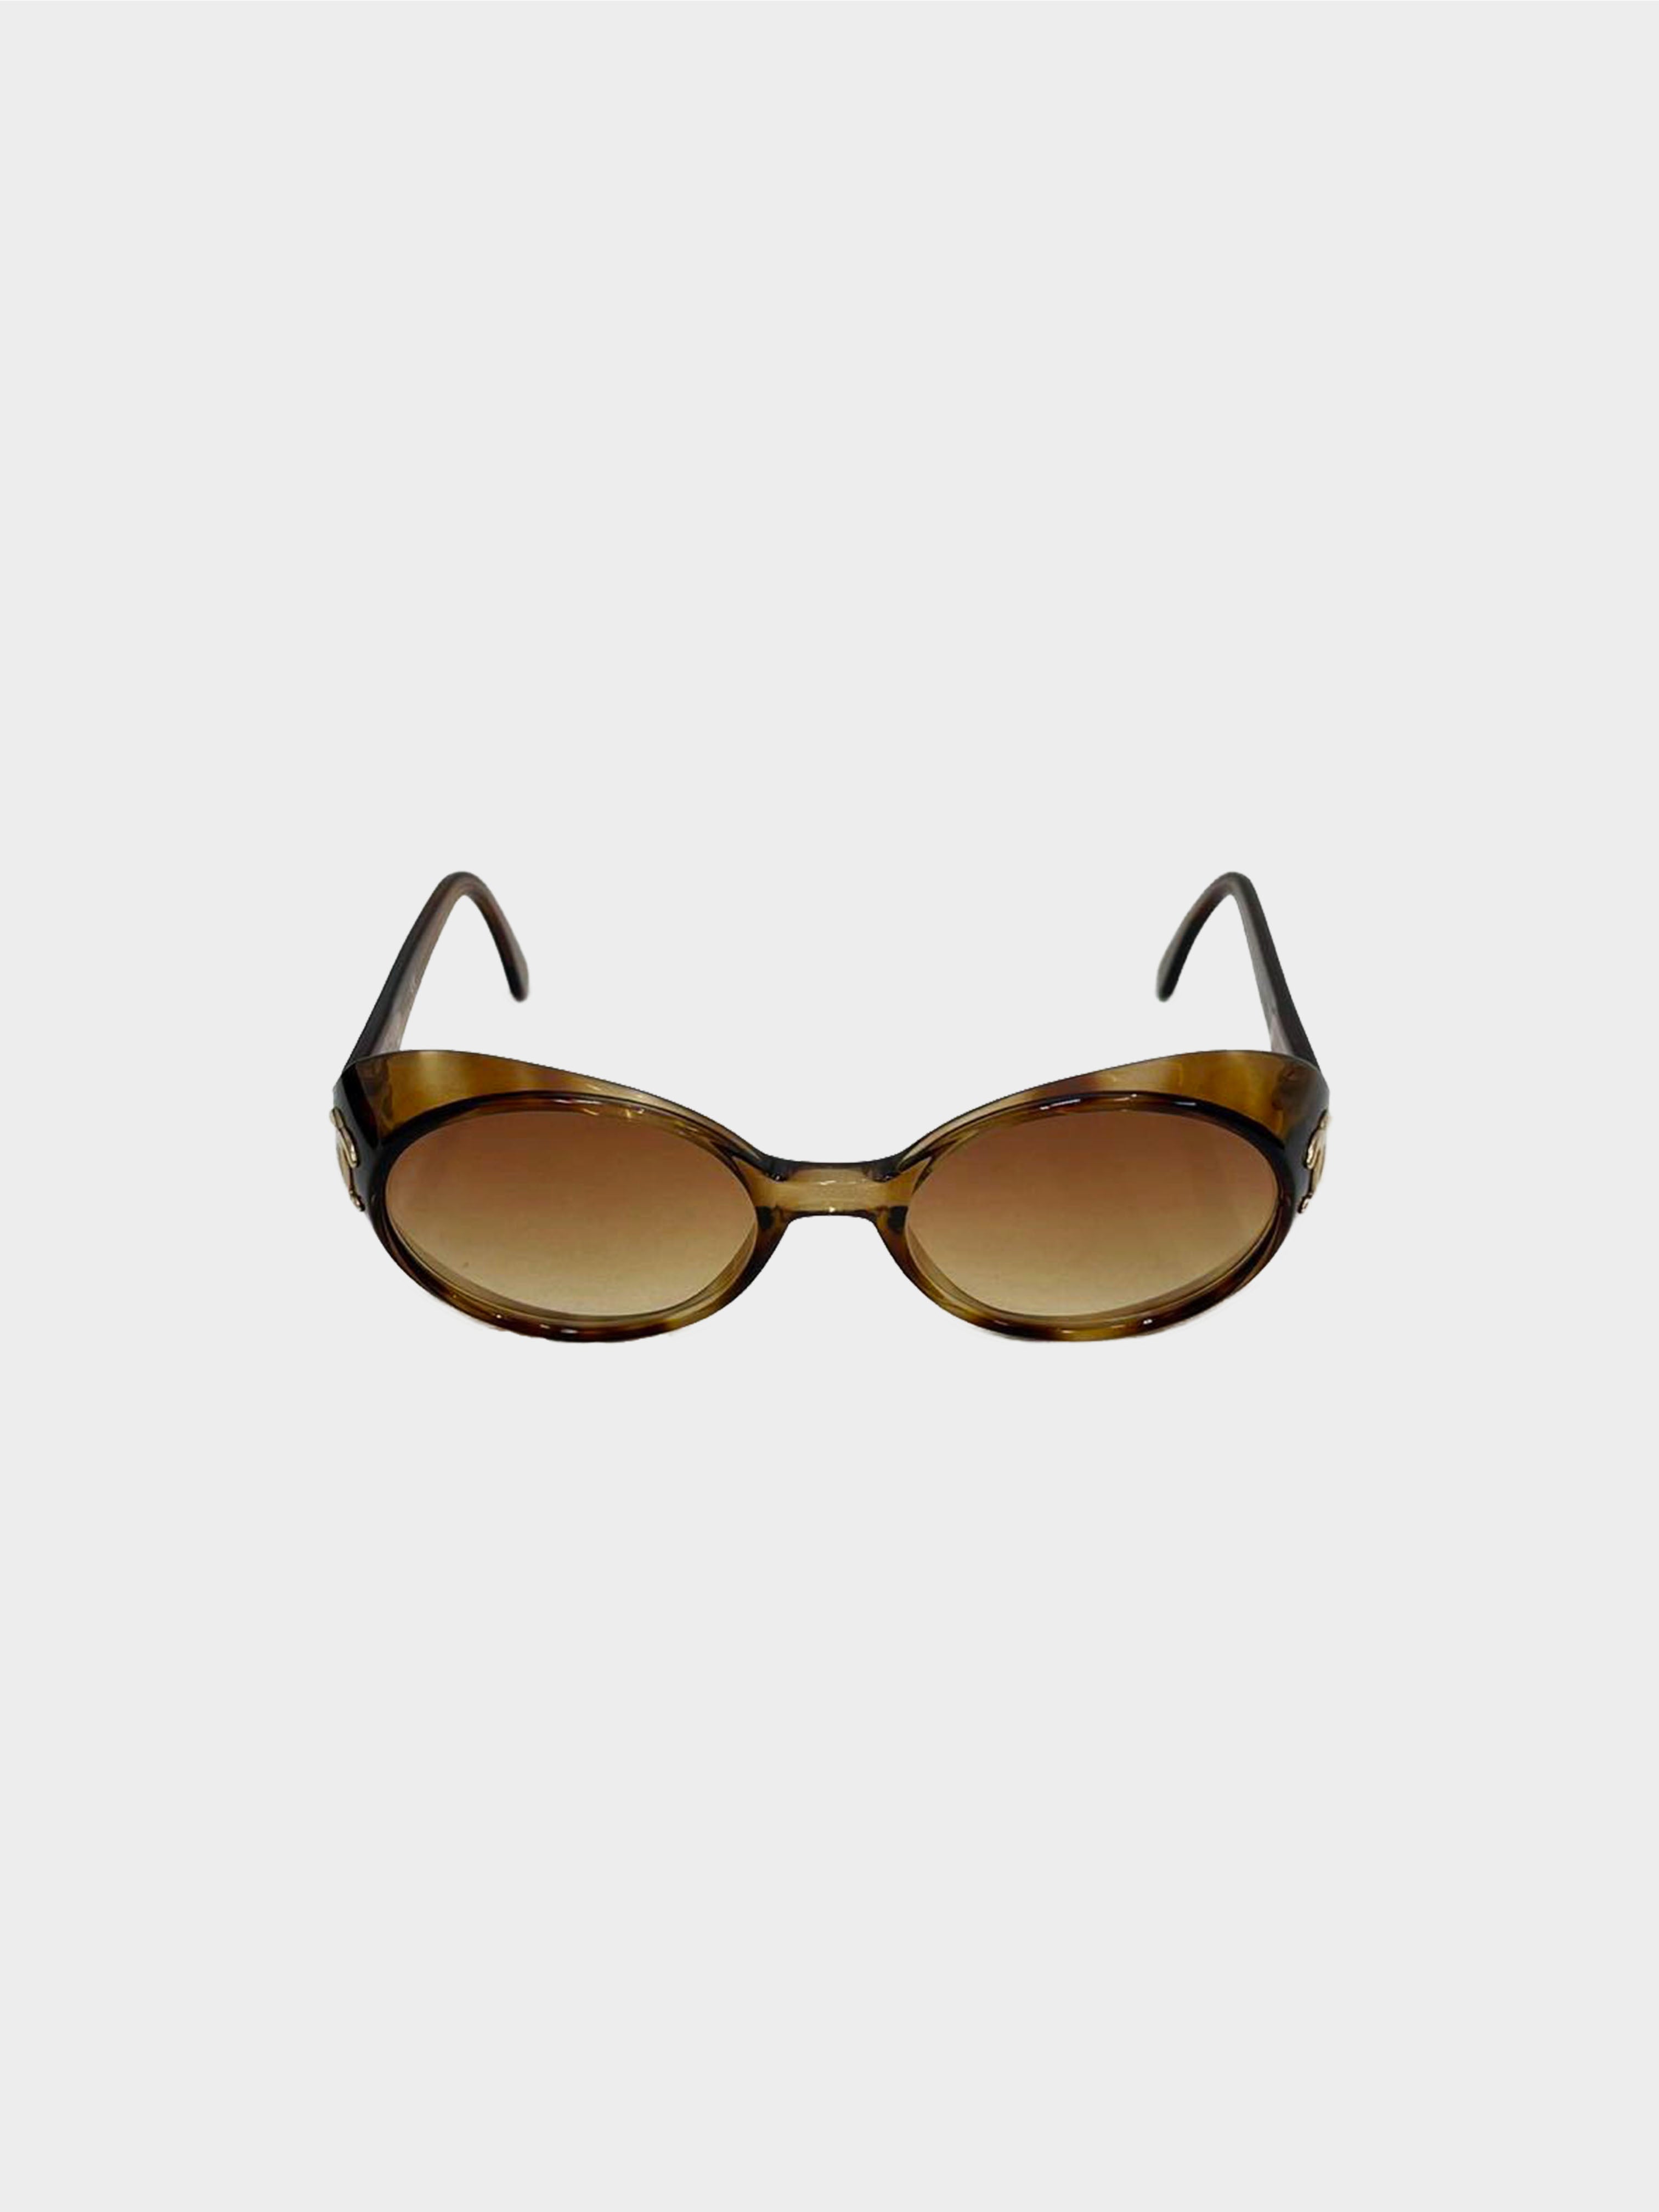 Chanel 1990s Rare Brown Tortoise Sunglasses · INTO